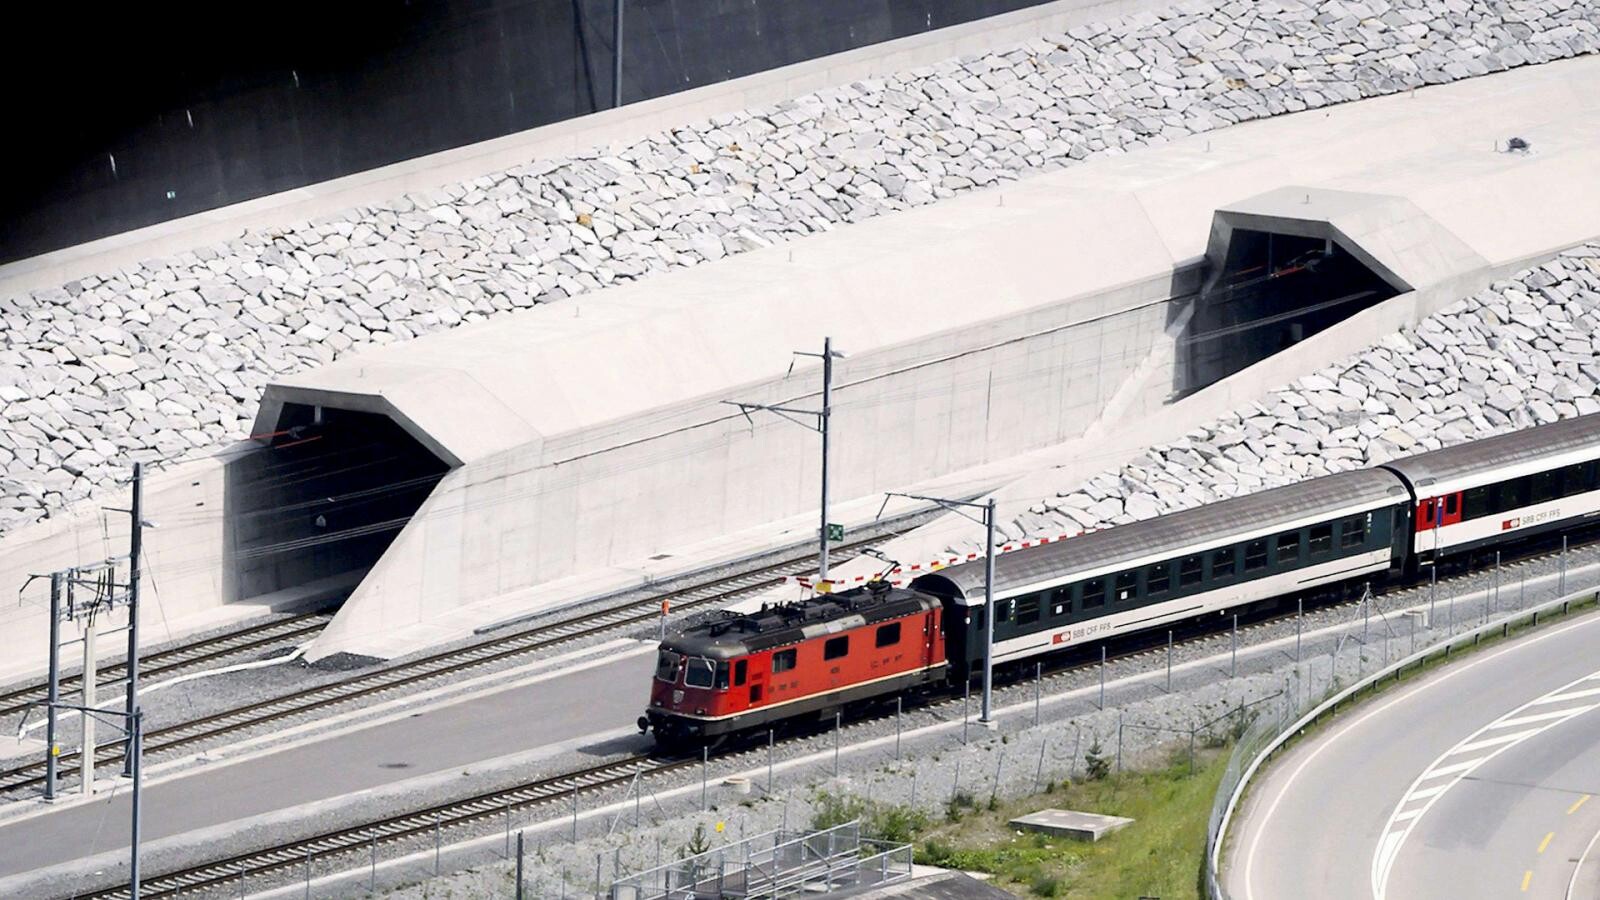 More information about "Gotthard Base Tunnel (GBT): Το βαθύτερο σιδηροδρομικό τούνελ στον κόσμο"